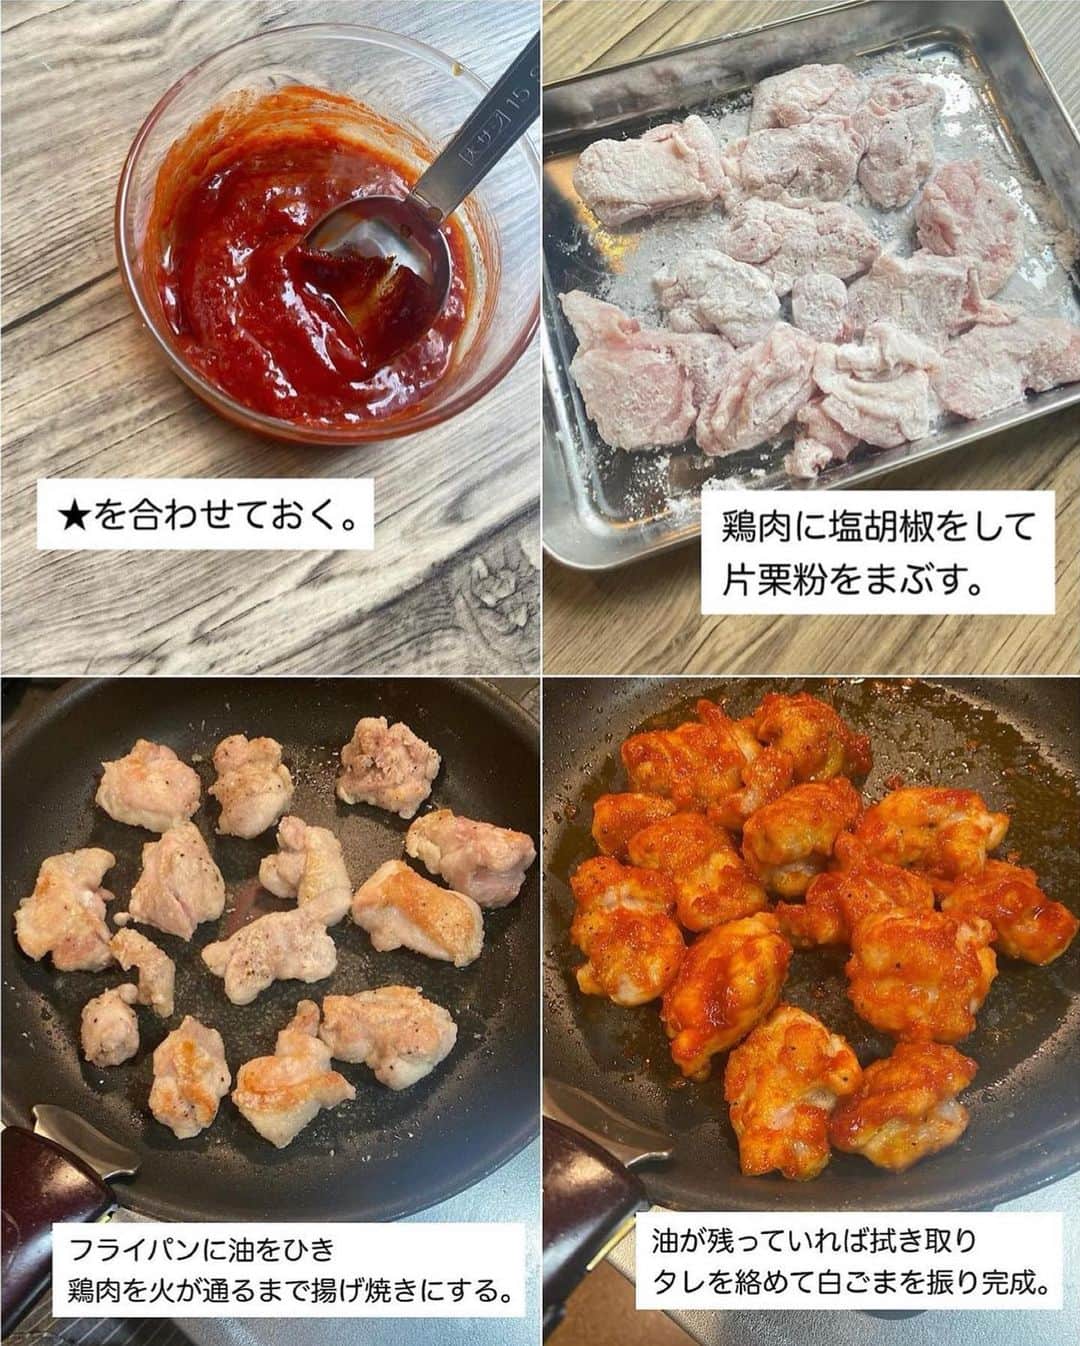 山本菜月さんのインスタグラム写真 - (山本菜月Instagram)「⁡ ⁡ ⁡ ⁡ ┈┈┈┈┈┈┈┈┈┈┈••✼ おうちにある調味料で作る 韓国料理 ┈┈┈┈┈┈┈┈┈┈┈••✼ ⁡ ⁡ ⁡ こんにちは♡ 菜月 (@zubora_meshi_ )です♩ ⁡ 今日は韓国料理屋さんに 行った気分になれる 王道のレシピ４品をまとめました。 ⁡ どのレシピも それだけ作れば満足できる ボリューム感のある内容になっています♡ ⁡ 難しい工程ははぶき、家の調味料で 簡単に作れるので是非お試しください✨ ⁡ ⁡ ⁡ ⁡ ｡.ꕤ⌒⌒⌒⌒⌒⌒ꕤ⌒⌒⌒⌒⌒⌒ꕤ.｡ ⁡ ⁡ ⁡ ⁡ ⚫︎ヤンニョムチキン ⁡ 【材料2人分】 鶏もも肉 300g 塩胡椒 少々 片栗粉 大さじ2 白ごま 適量 サラダ油 大さじ2 ★ ケチャップ 大さじ1 みりん 大さじ1 砂糖 大さじ1 コチュジャン 大さじ1 しょうゆ 小さじ1 にんにくチューブ 小さじ1/2 ⁡ 【作り方】 ①鶏肉を一口大に切り 　塩胡椒をして片栗粉をまぶす。 ②★を合わせておく。 ③フライパンに油をひき①を揚げ焼きにする。 ④フライパンに油が残っていれば拭き取り 　★を絡め白ごまを振ったら完成。 ⁡ 【メモ】 鶏肉を揚げ焼きにする際は中火がベスト。 弱すぎるとベトベトになり 強すぎると火が通る前に焦げてしまいます。 ⁡ ⁡ ⁡ ＊＊＊ ⁡ ⁡ ⁡ ⚫︎旨辛ビビンバ ⁡ 【材料2.3人分】 合い挽き肉 250g ★醤油、砂糖、みりん、コチュジャン 各大さじ1 ★にんにく＆生姜チューブ 小さじ1 ほうれん草 3株 にんじん 1/2本 大豆もやし 1/2袋 (もやしでも◎) ⚫︎ごま油 大さじ2 ⚫︎醤油 大さじ1/2 ⚫︎鶏がらスープの素 小さじ1 ⚫︎塩 適量 たまご 作る分 ⁡ 【作り方】 ⁡ ①にんじん細切り、ほうれん草4cm幅に切る。 　もやしとたまごは冷蔵庫から出しておく。 ②鍋2つに水をはり沸騰させ 　片方は火を止めたまごを入れ12〜13分放置。 　時間がたったら水につけておく。 　もう片方は野菜を入れ2分30秒茹でる。 ③野菜のザルにあげておき 　その間にフライパンにひき肉を入れ 　パラパラになるまで炒め★を入れ 　水分が少なくなるまで炒める。 ④野菜の水気をしっかりしぼり⚫︎を和える。 ⑤ごはんに②③④とキムチ、白ごま振り完成。 ⁡ ⁡ ⁡ ＊＊＊ ⁡ ⁡ ⁡ ⚫︎冷麺風そうめん ⁡ 【1人分】(2人分は倍量) そうめん 1束 ごま油 適宜 ⚫︎水 100cc ⚫︎お酢 大さじ1 ⚫︎醤油 大さじ1/2 ⚫︎鶏がらスープの素、砂糖 各小さじ1/2 ⚫︎にんにくチューブ、コチュジャン 各2cm 　(辛さが苦手な方は抜いて◎) ⚫︎すりごま 大さじ1 たまご、のり、豆苗などはお好みで。 ⁡ 【作り方】 ①ボウルに⚫︎を入れ混ぜ合わせ 　冷蔵庫で冷やしておく。 ②そうめんを表記通りに茹で 　冷水で洗い氷水で締め、水気を絞る。 　※しっかり冷やし、しっかり絞るのがおいしさポイント ③器に①②を入れお好みの具材を乗せる。 ⁡ ⁡ ⁡ ＊＊＊ ⁡ ⁡ ⁡ ⚫︎豚キムチヂミ ⁡ 【材料1人前(小さめ1枚)】 ※2人前は倍量 ※直径20cmのフライパン使用 ⁡ 豚肉 50g キムチ 30g ニラ 1/4束 ⚫︎薄力粉 大さじ4 ⚫︎片栗粉 大さじ1 ⚫︎水 大さじ4 サラダ油 小さじ2 ⁡ 【作り方】 ①ボウルに⚫︎を入れて良く混ぜる。 ②①に豚肉(一口大)ニラ(2〜3cm) 　キムチ(小さめにハサミで切る)を入れ 　さっくり混ぜる。 ③フライパンに油をひき 　②を流し入れ平らに広げる。 　中火で焼き色を付けて上下返しながら火を通す。 ④好きな大きさに切り、 　好きなタレで召し上がれ♩ ⁡ 【※参考】〜チヂミのタレ〜 醤油 大さじ1 お酢 大さじ1 コチュジャン 小さじ1〜お好みで ごま油 小さじ1 上記全て合わせる。 ⁡ ⁡ ⁡ ⁡ ｡.ꕤ⌒⌒⌒⌒⌒⌒ꕤ⌒⌒⌒⌒⌒⌒ꕤ.｡ ⁡ ⁡ ⁡ \ レシピ本の発売が決まりました/ ⁡ ⁡ 📙書籍タイトル ┈┈┈┈┈┈┈┈┈┈┈┈┈┈┈┈┈┈ もはや動けないって時はこれつくろ! とびきり美味しい疲れ果てごはん ┈┈┈┈┈┈┈┈┈┈┈┈┈┈┈┈┈┈ ⁡ ⁡ ⁡ 🌼発売日  : 2023年9月27日(水) 　ご予約後、上記の日付にお届けされます。 ⁡ ⁡ ⁡ 🚗ご予約  : Amazon・楽天ブックスにて開始中 ⁡ ⁡ ⁡ 🔍ご予約方法  :  わたしのプロフィールリンク 　もしくはハイライト【書籍ご予約】に 　ご予約リンクを貼っています♩ ⁡ ⁡ ⁡ 最後までご覧頂きありがとうございます。 是非、食レポを聞かせてくださると嬉しいです♡ ⁡ ⁡ ＊NATSU KITCHEN ＊」9月8日 11時53分 - zubora_meshi_